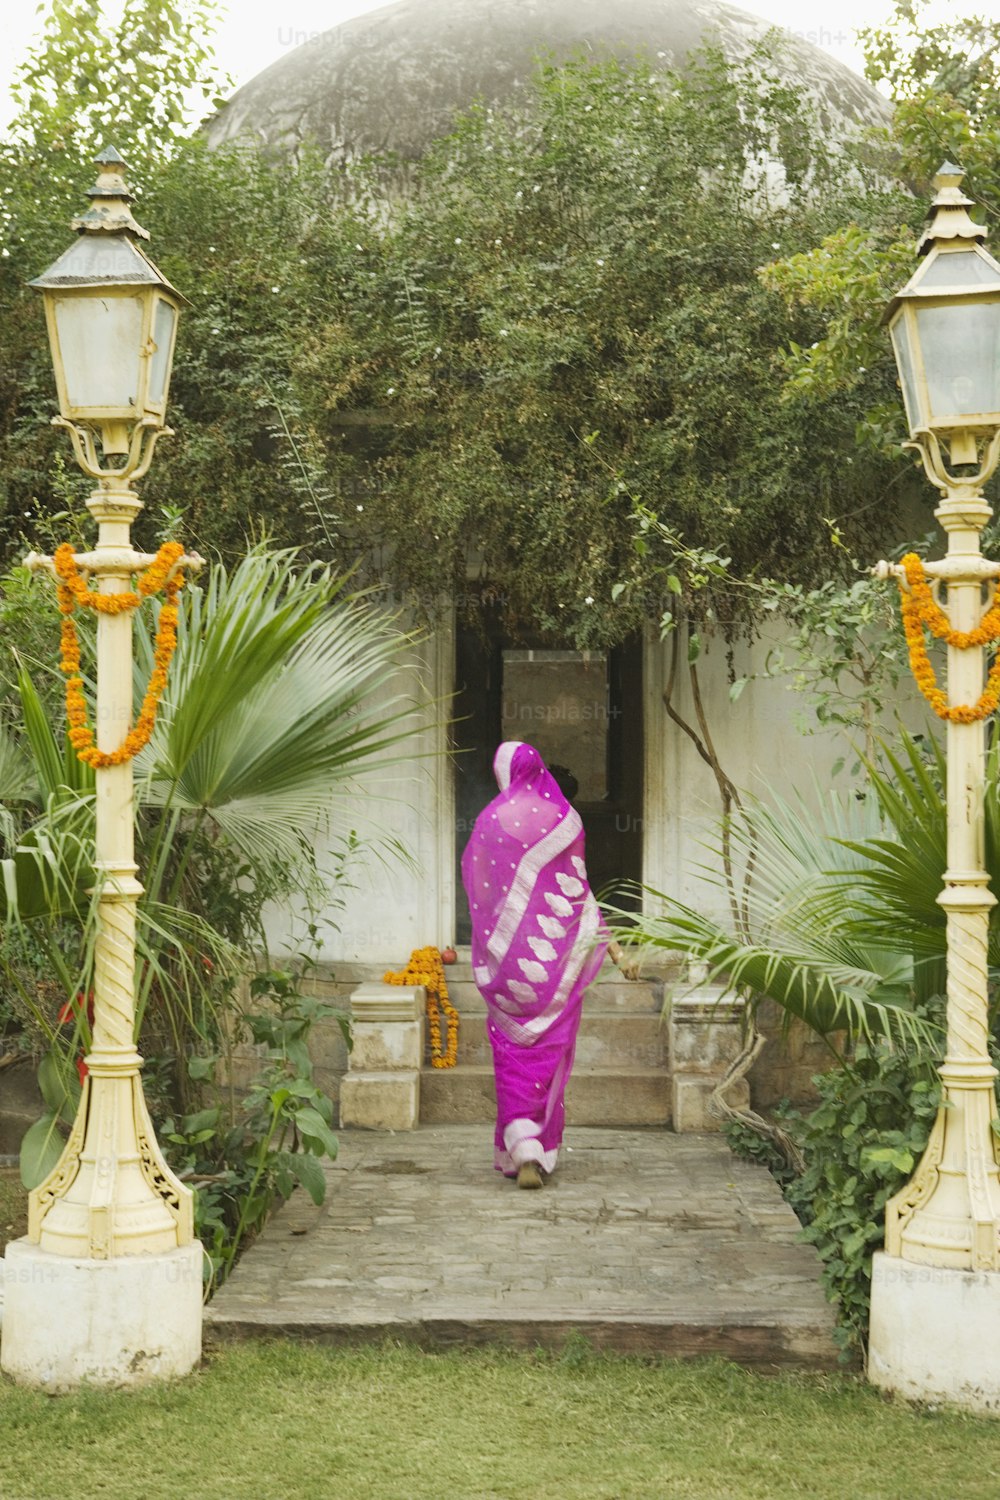 Una mujer en un sari rosa subiendo una serie de escalones